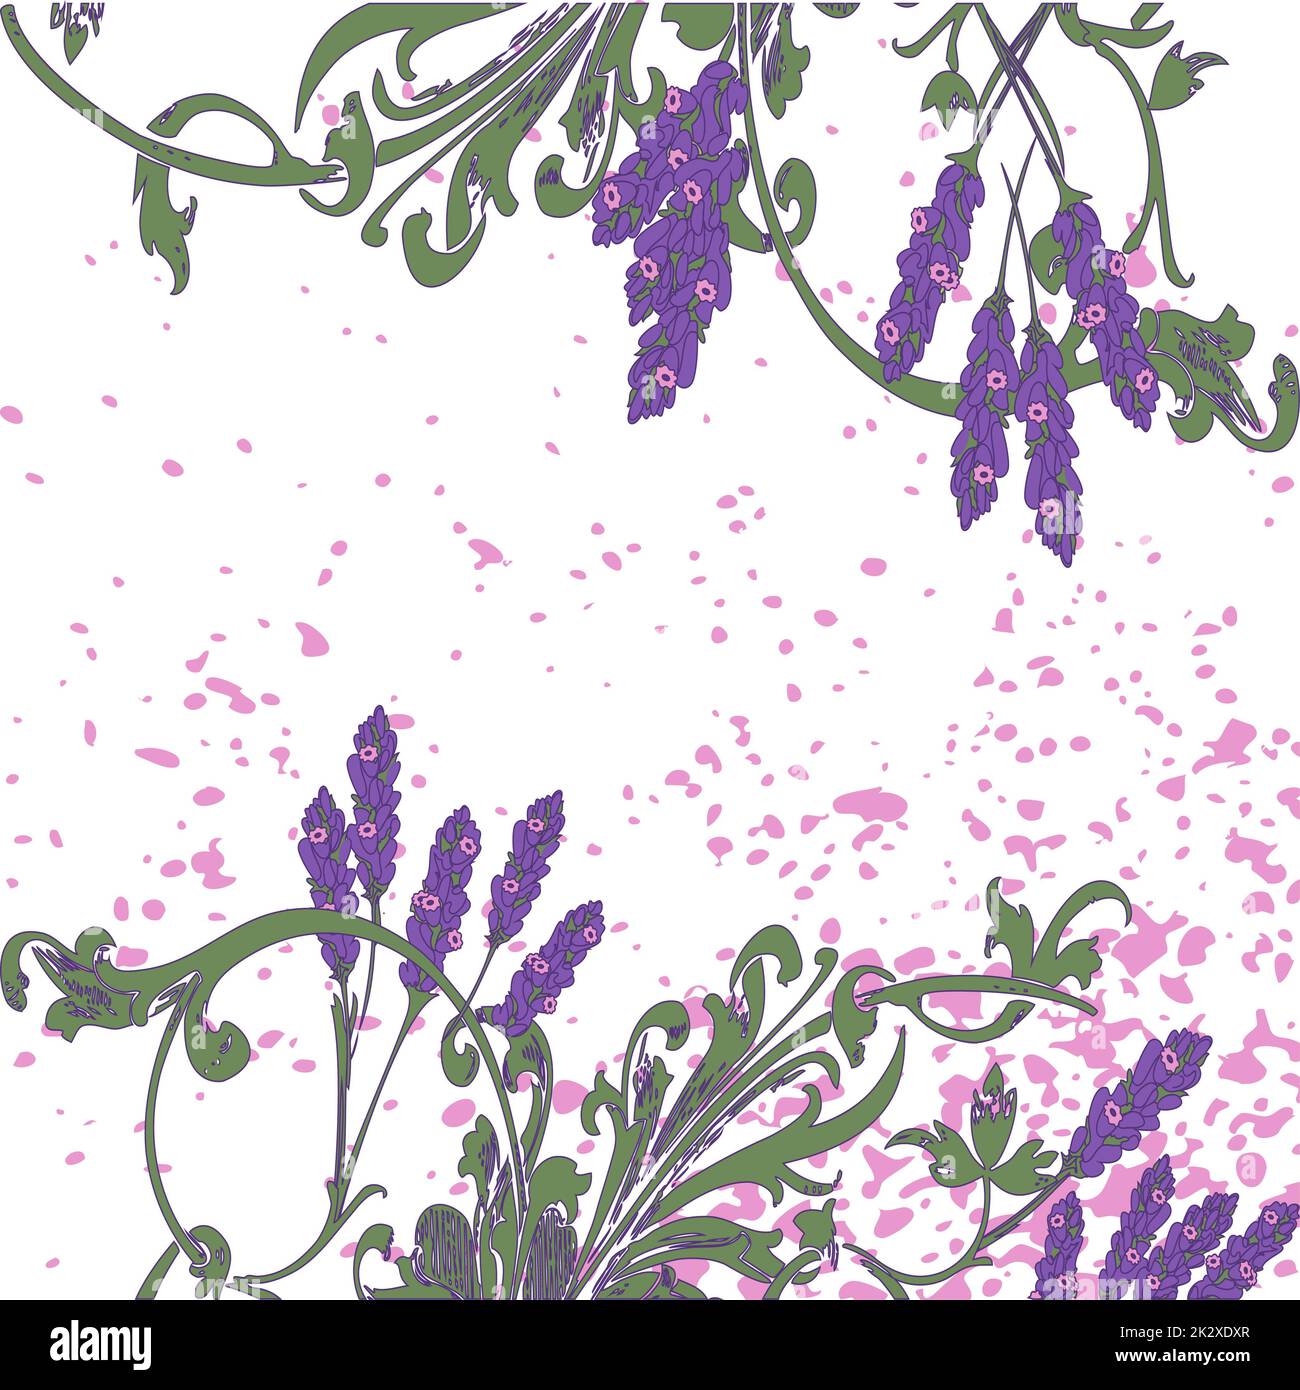 Handgezeichnete Lavendelblumen auf weißem, abstraktem Blumenmuster. Blühende grüne Äste, trendiger künstlerischer Hintergrund. Grafikvektordarstellung Hochzeit, Poster, Grußkarte, Zeitschrift Stockfoto